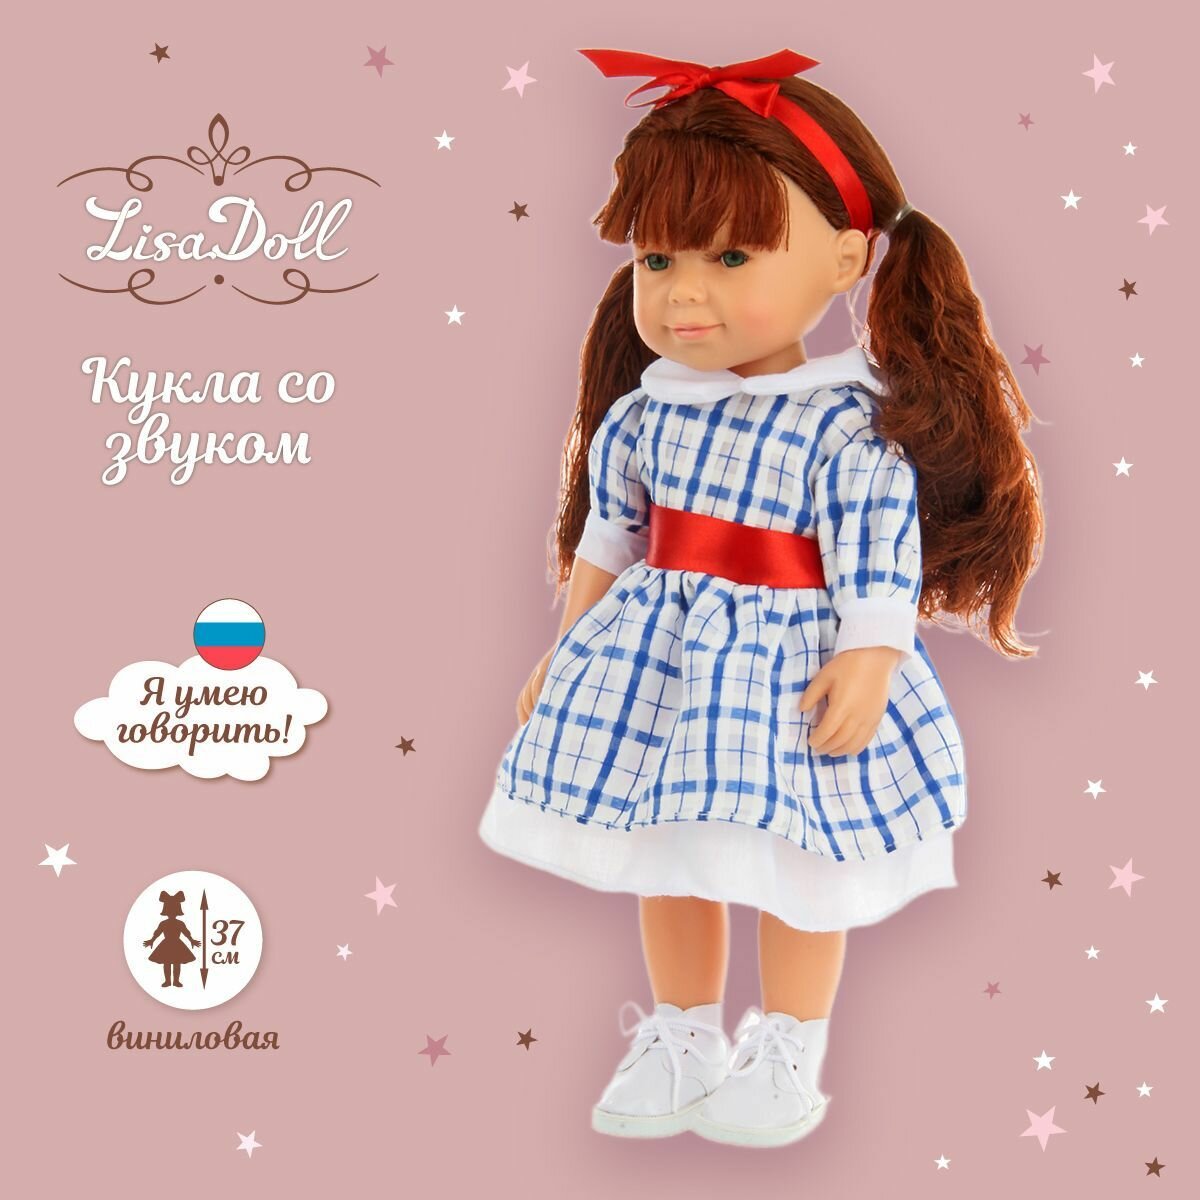 Кукла интерактивная со звуком Мила 37 см, Lisa Doll / Куколка шарнирная с русской озвучкой / Коллекционная виниловая кукла для девочек